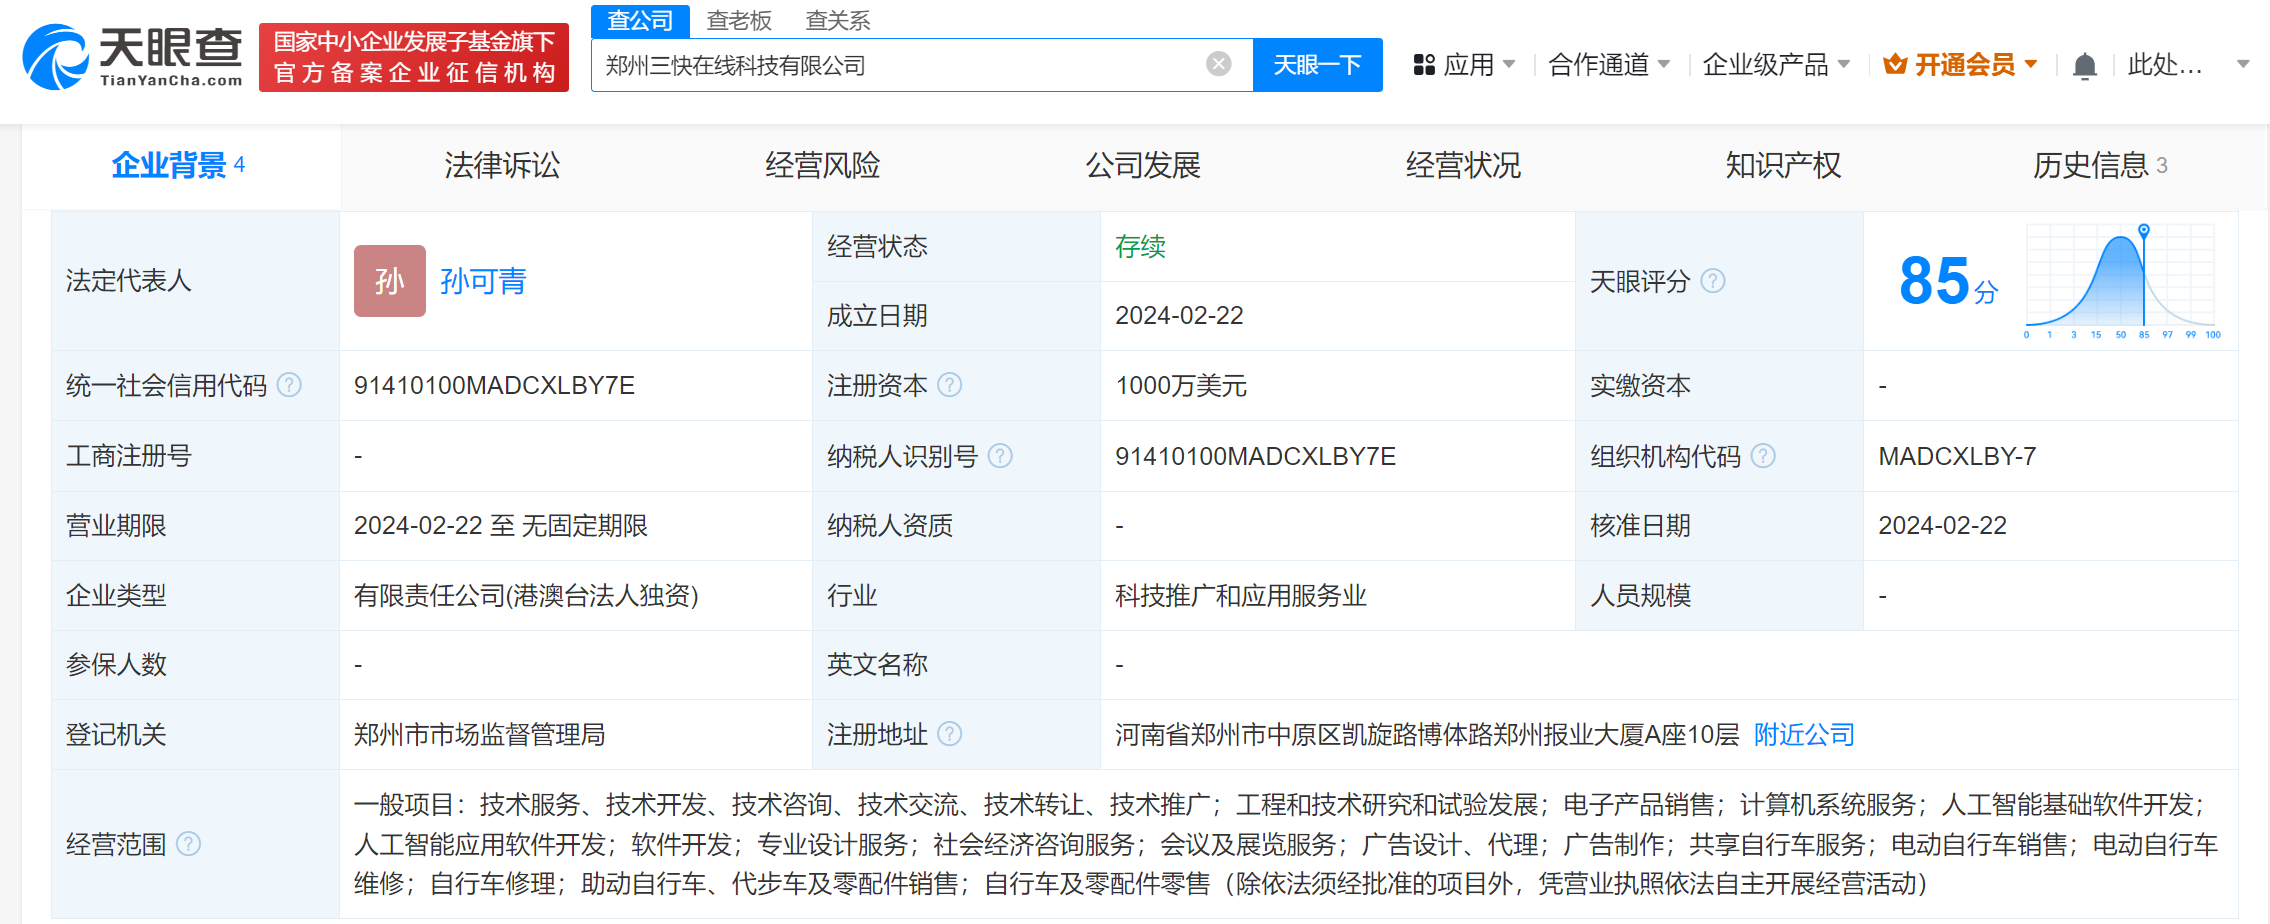 皇冠信用网在线注册_#美团在郑州成立三快在线科技公司# 注册资本1000万美元